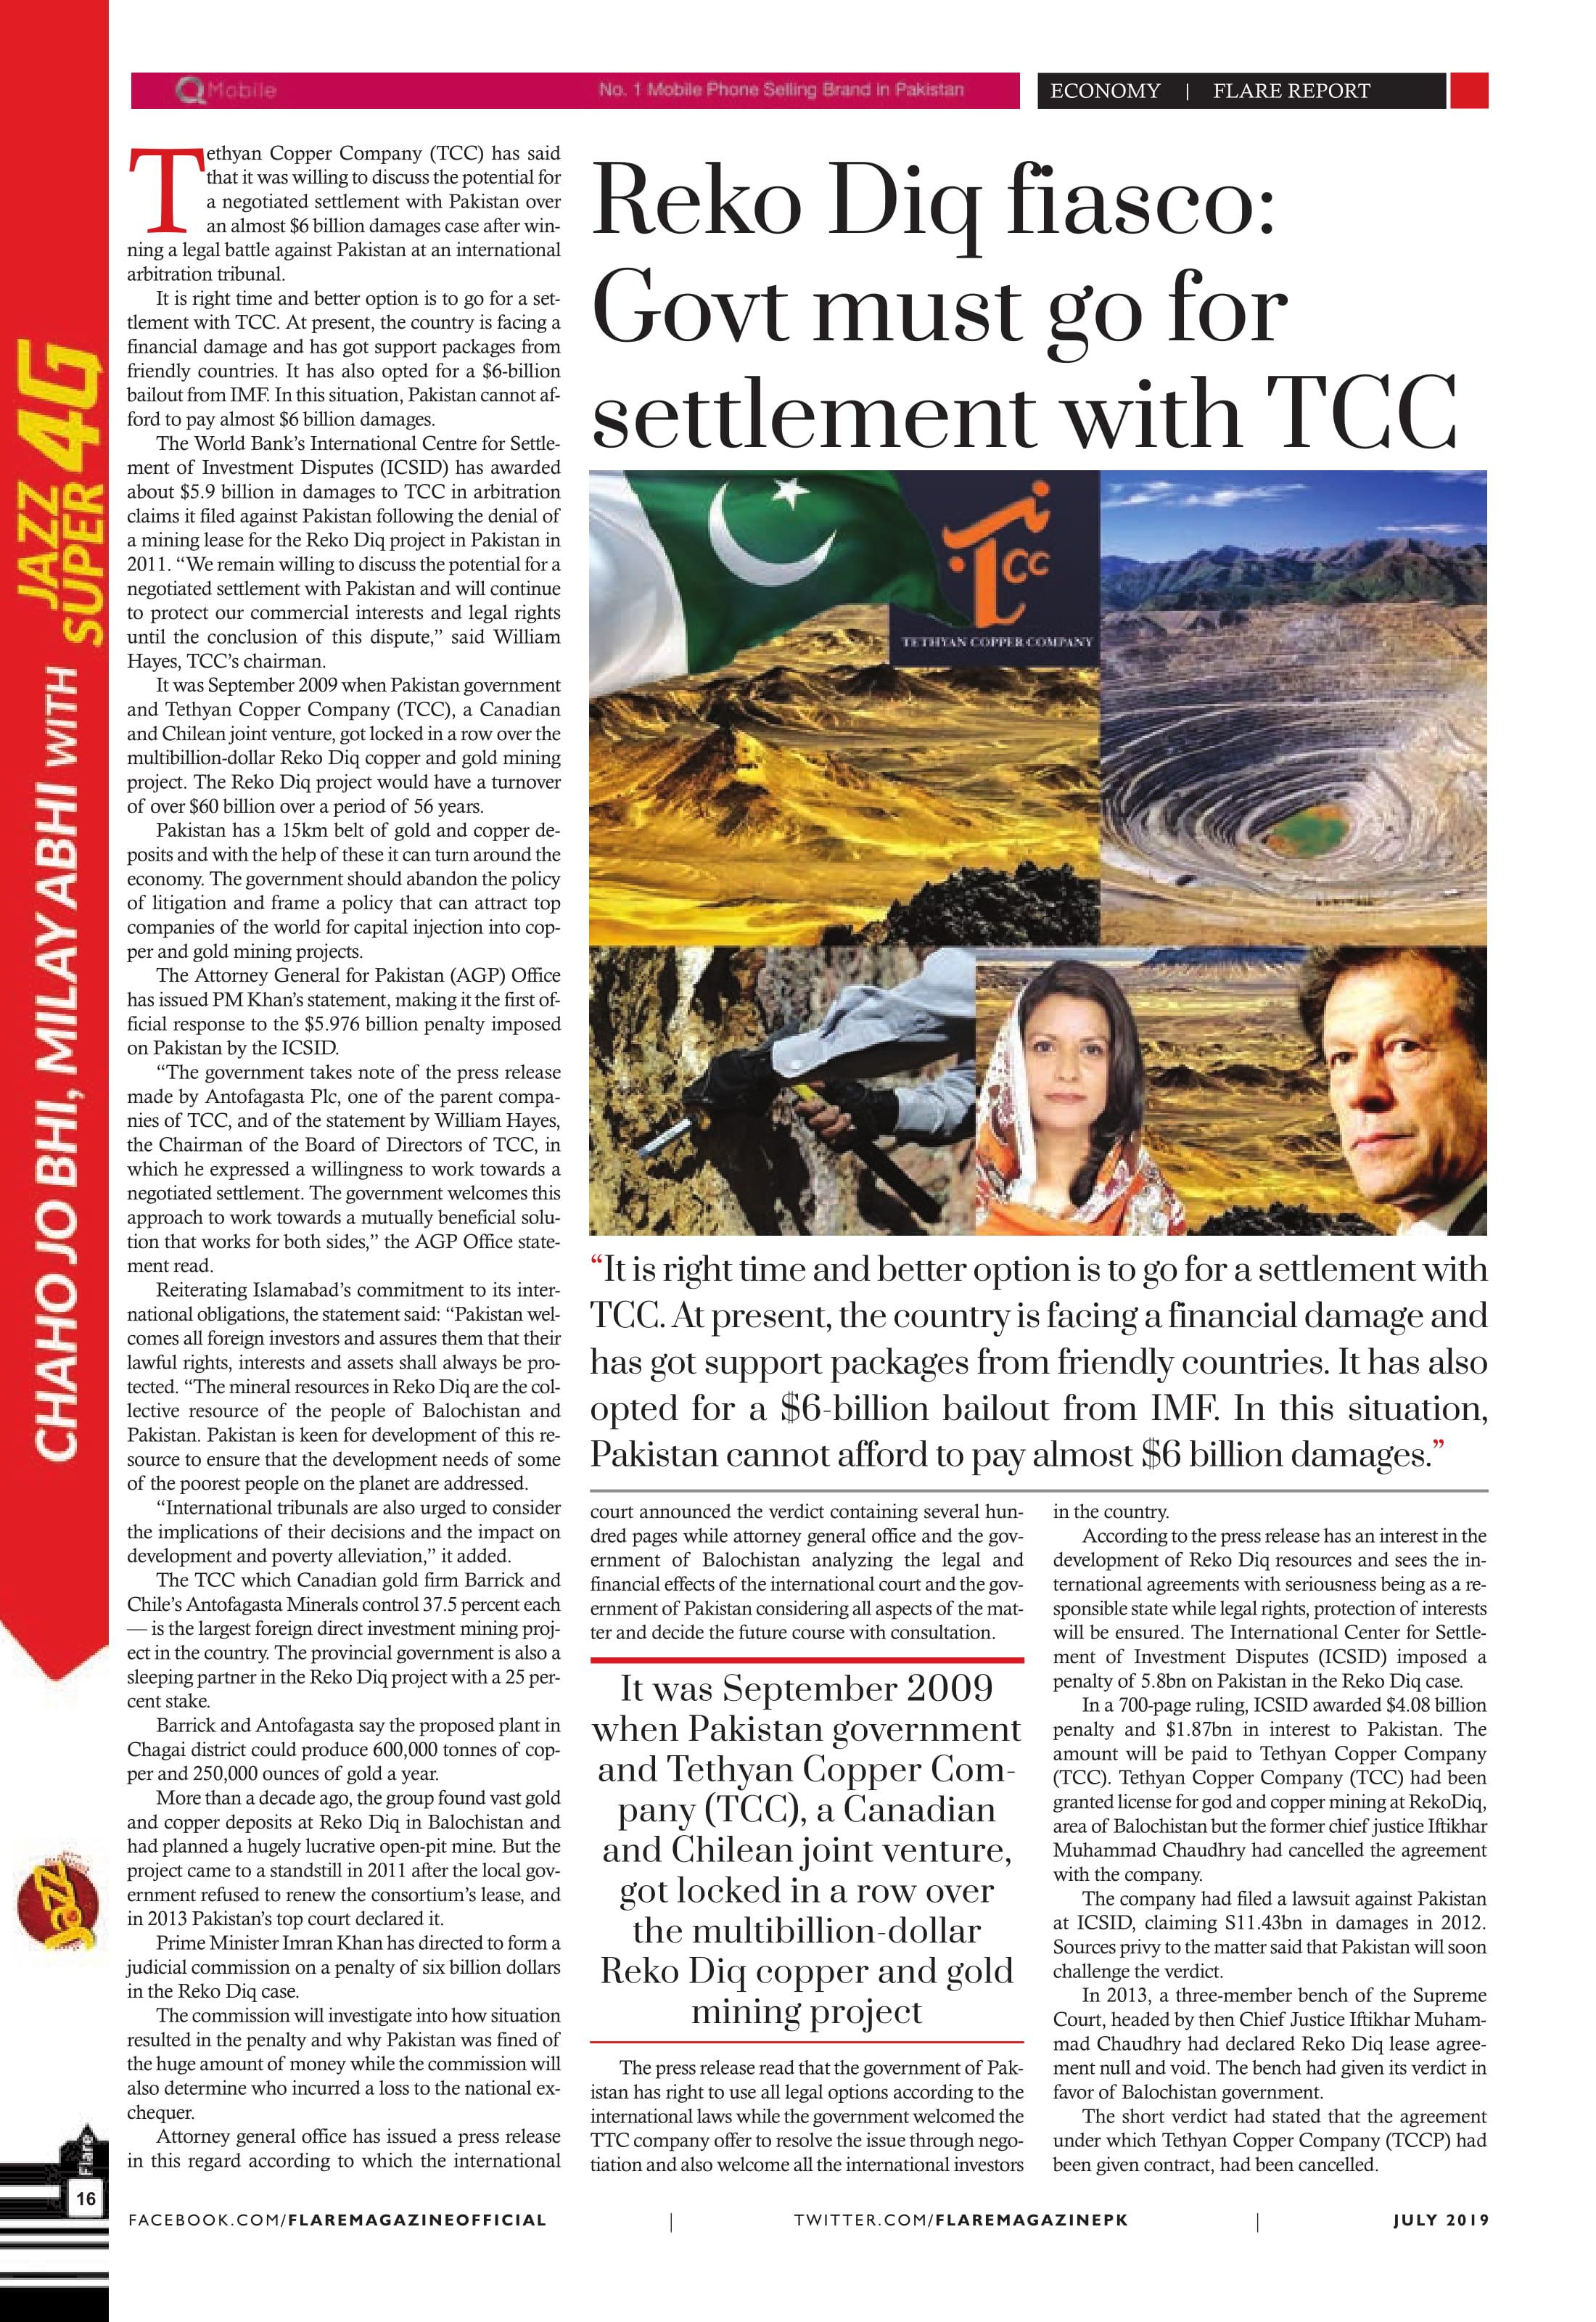 Reko Diq fiasco: Govt must go for settlement with TCC